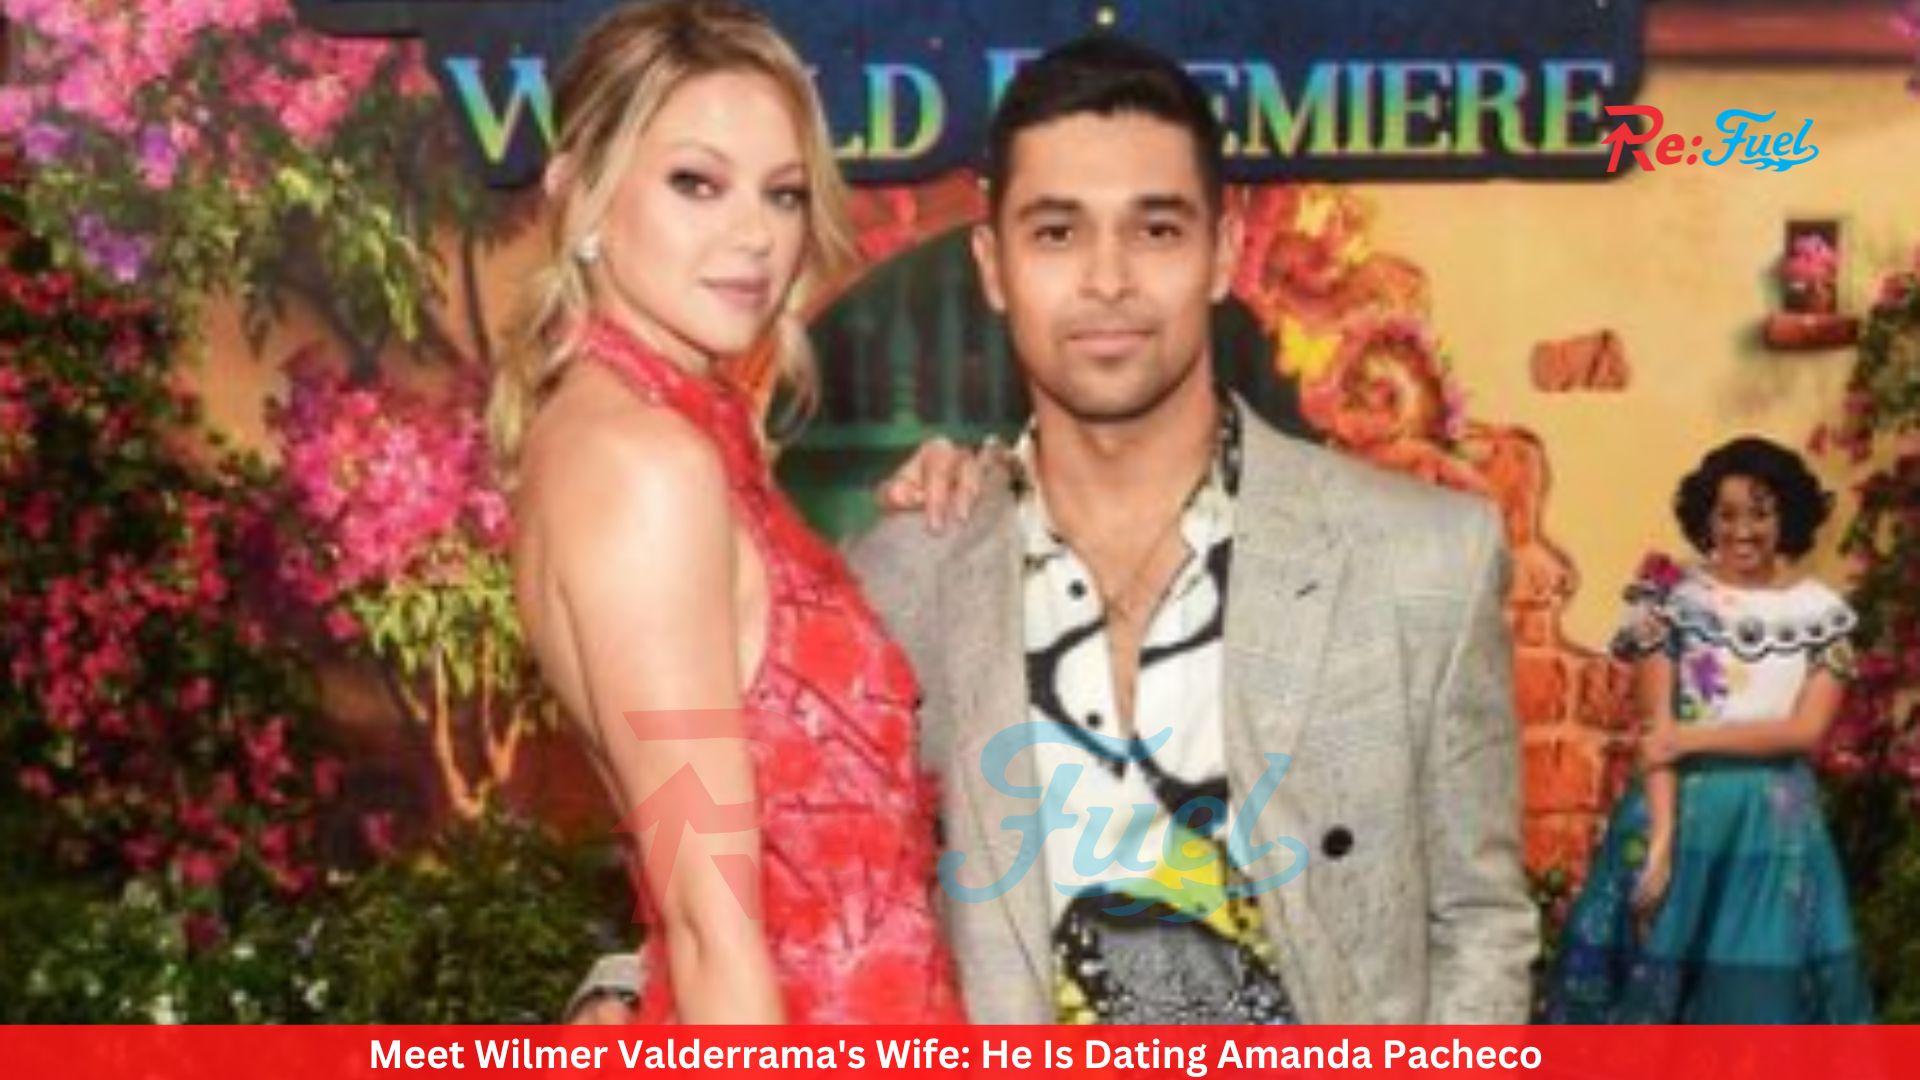 Meet Wilmer Valderrama's Wife: He Is Dating Amanda Pacheco